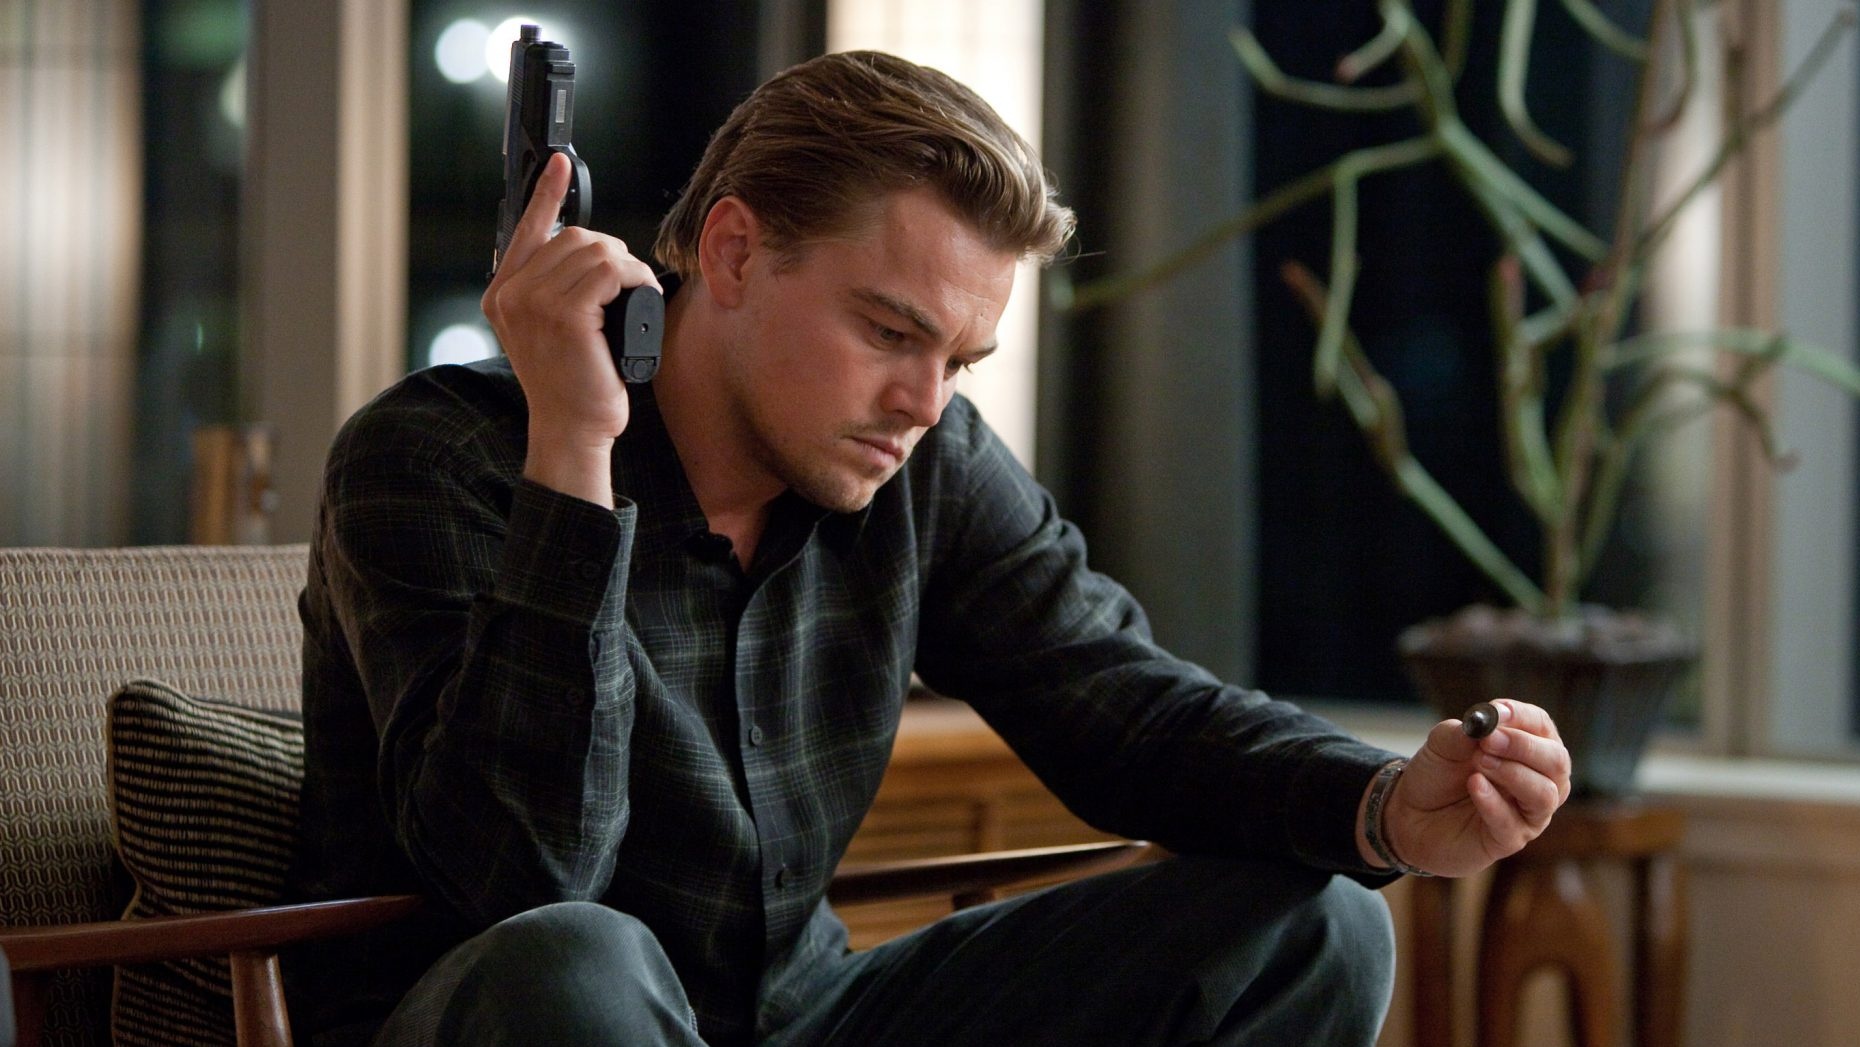 #13 Jahre nach Inception erklärt Christopher Nolan endlich das offene Ende des Films